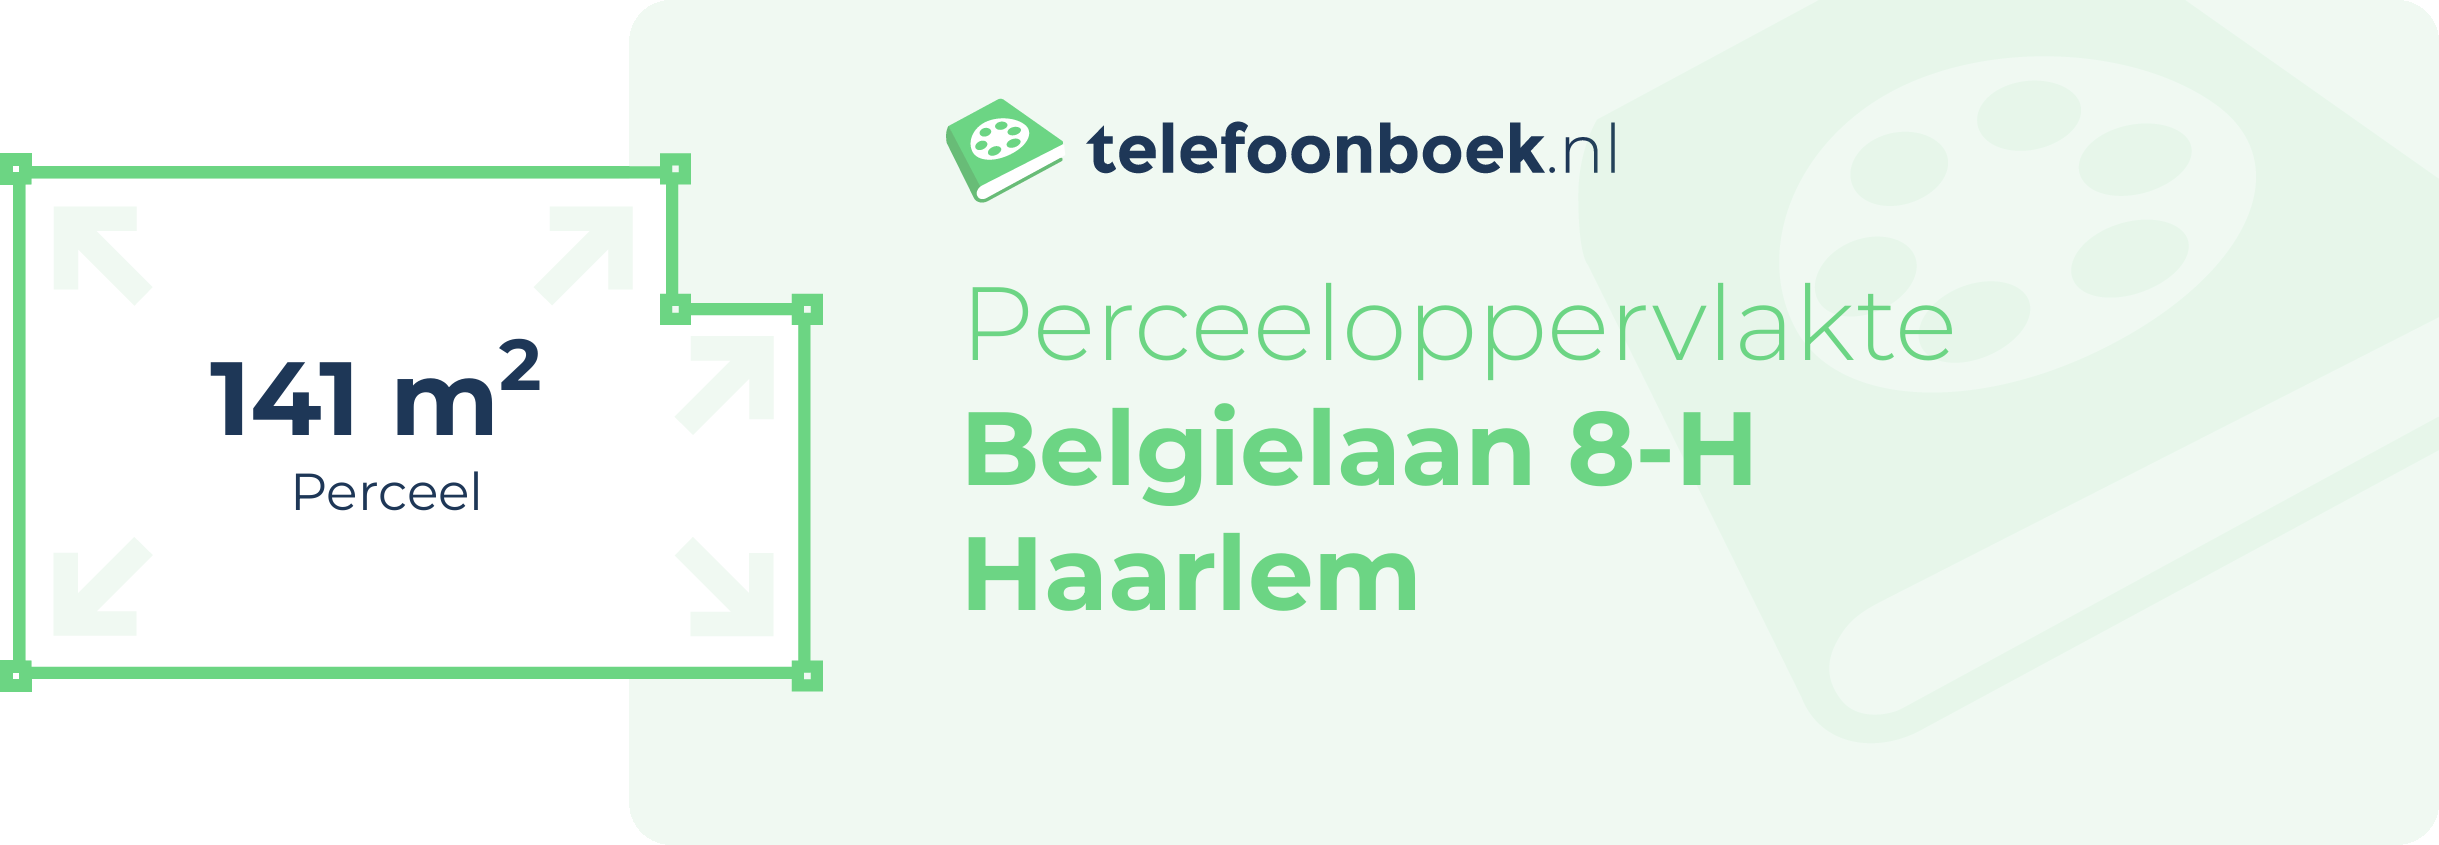 Perceeloppervlakte Belgielaan 8-H Haarlem